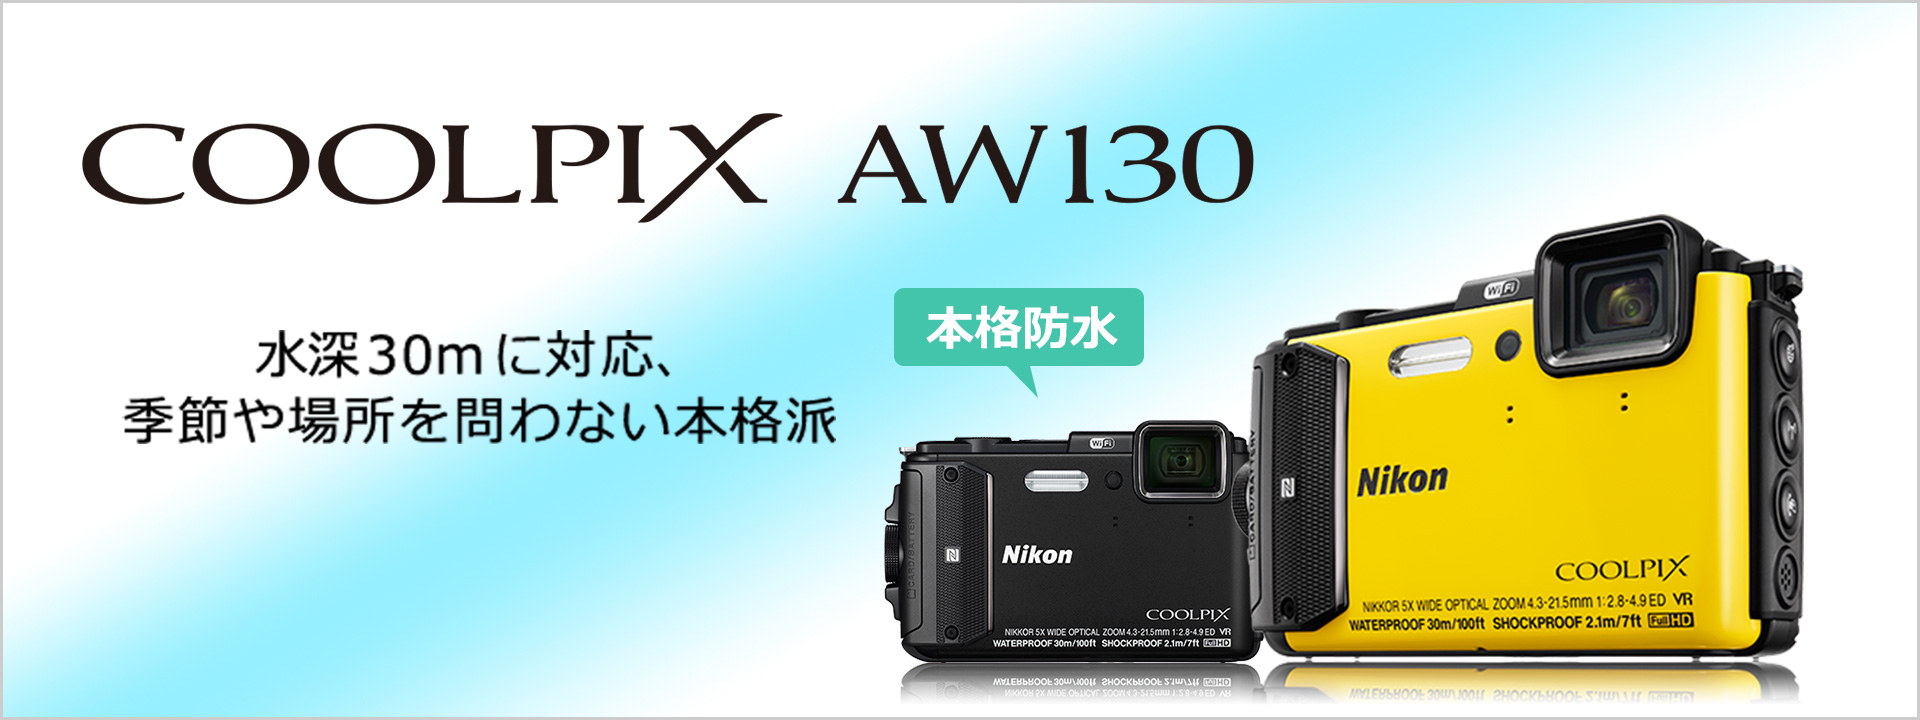 COOLPIX AW130 - 概要 | コンパクトデジタルカメラ | ニコンイメージング